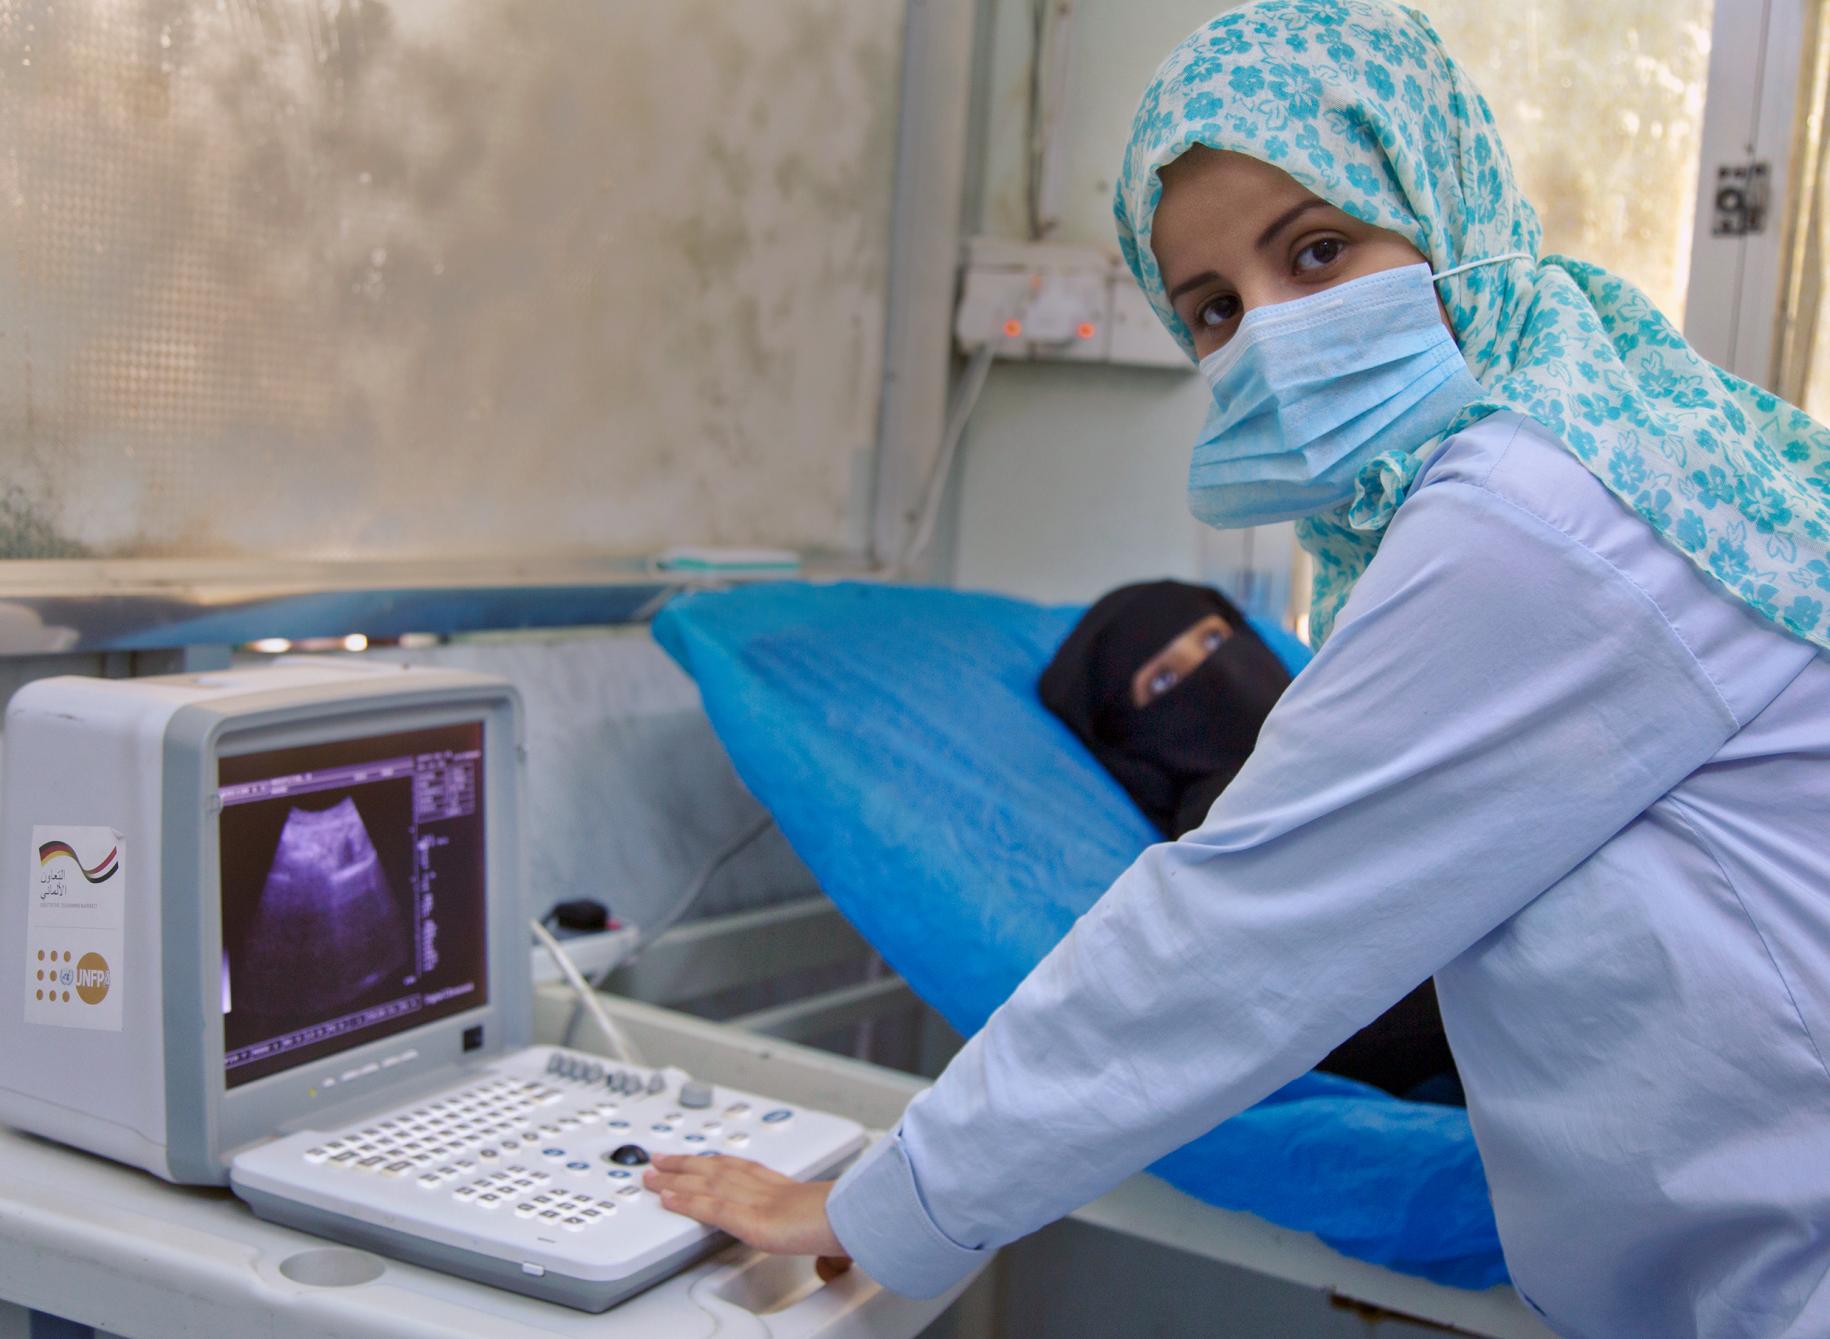 تتلقى امرأة الرعاية الصحية الإنجابية في مستشفى الثورة في الحديدة الذي تدعمه منظمة الصحة العالمية وصندوق الأمم المتحدة للسكان.